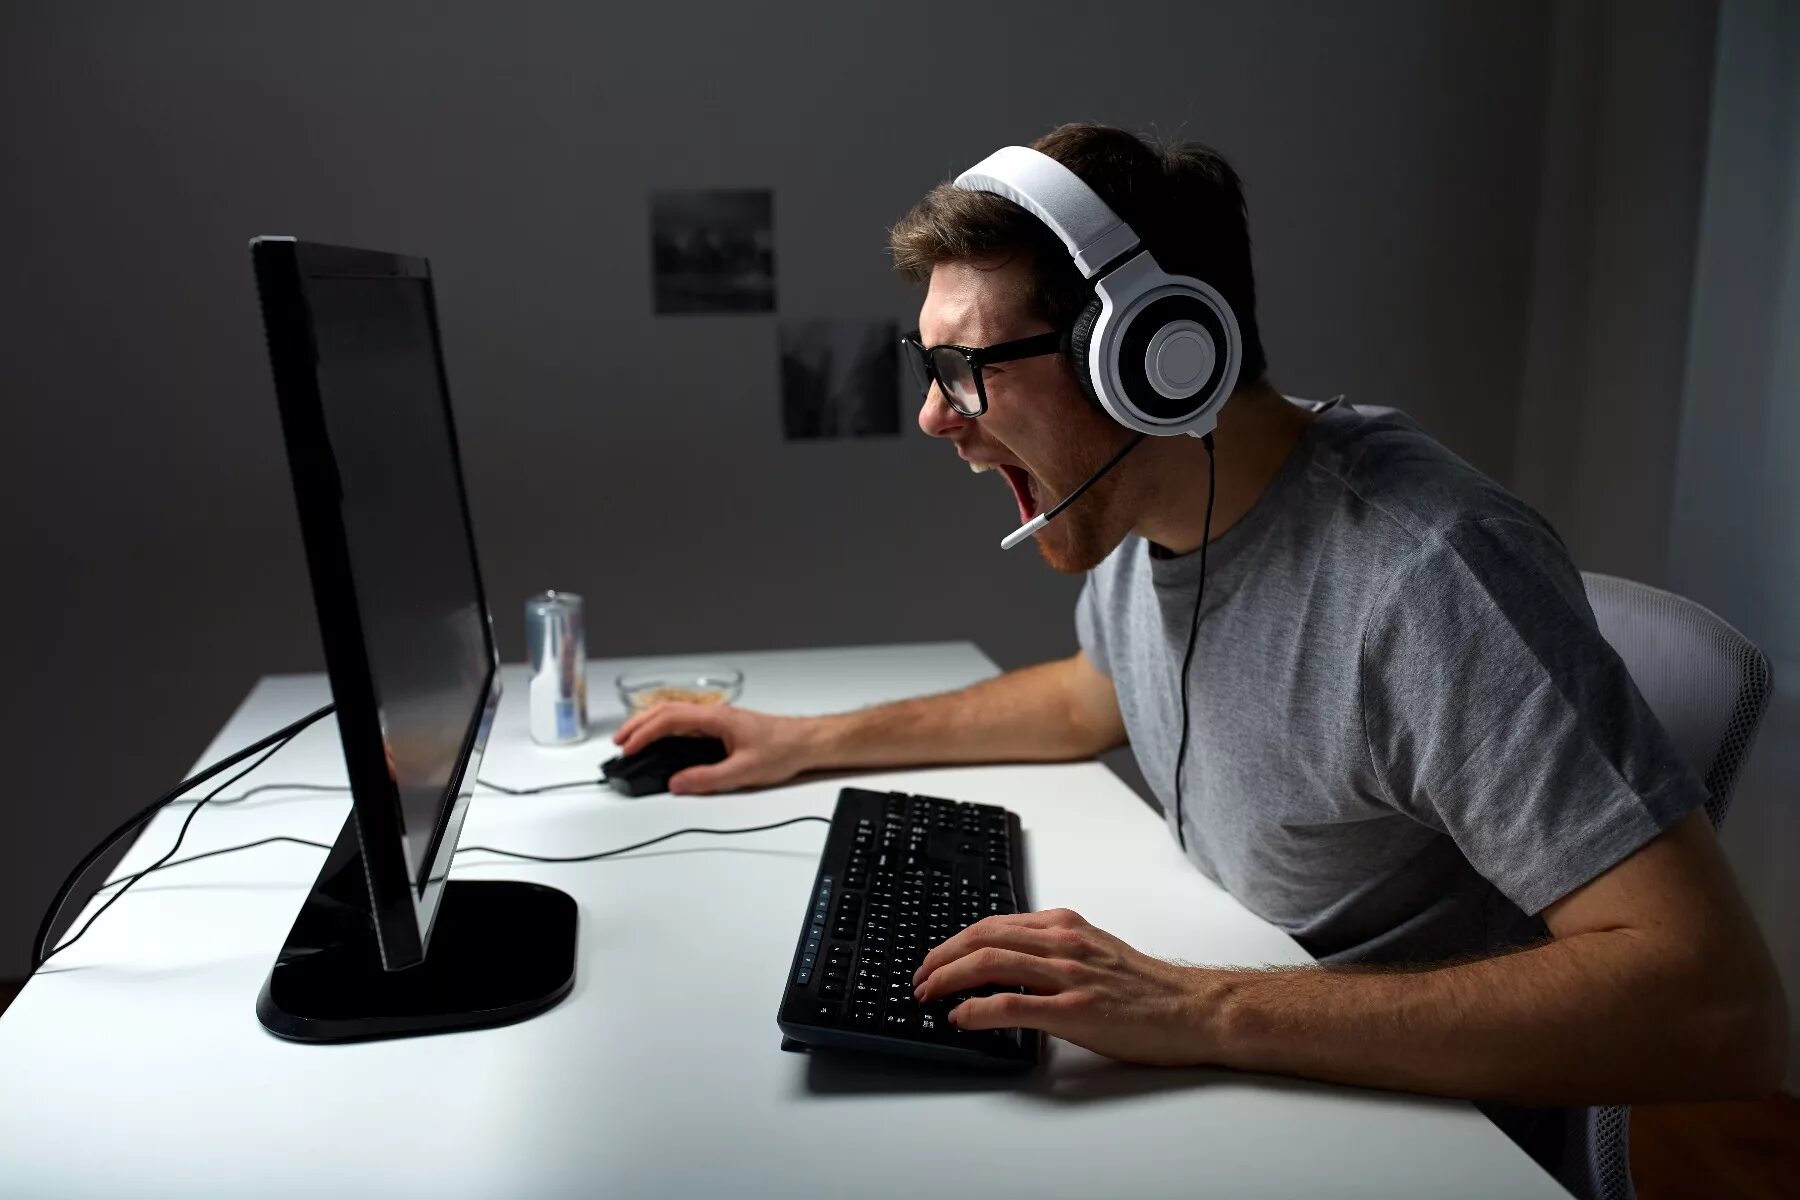 Фото продвинутый. Игрок в компьютерные игры. Человек играющий за компьютером. Парень играющий в компьютер. Геймер.